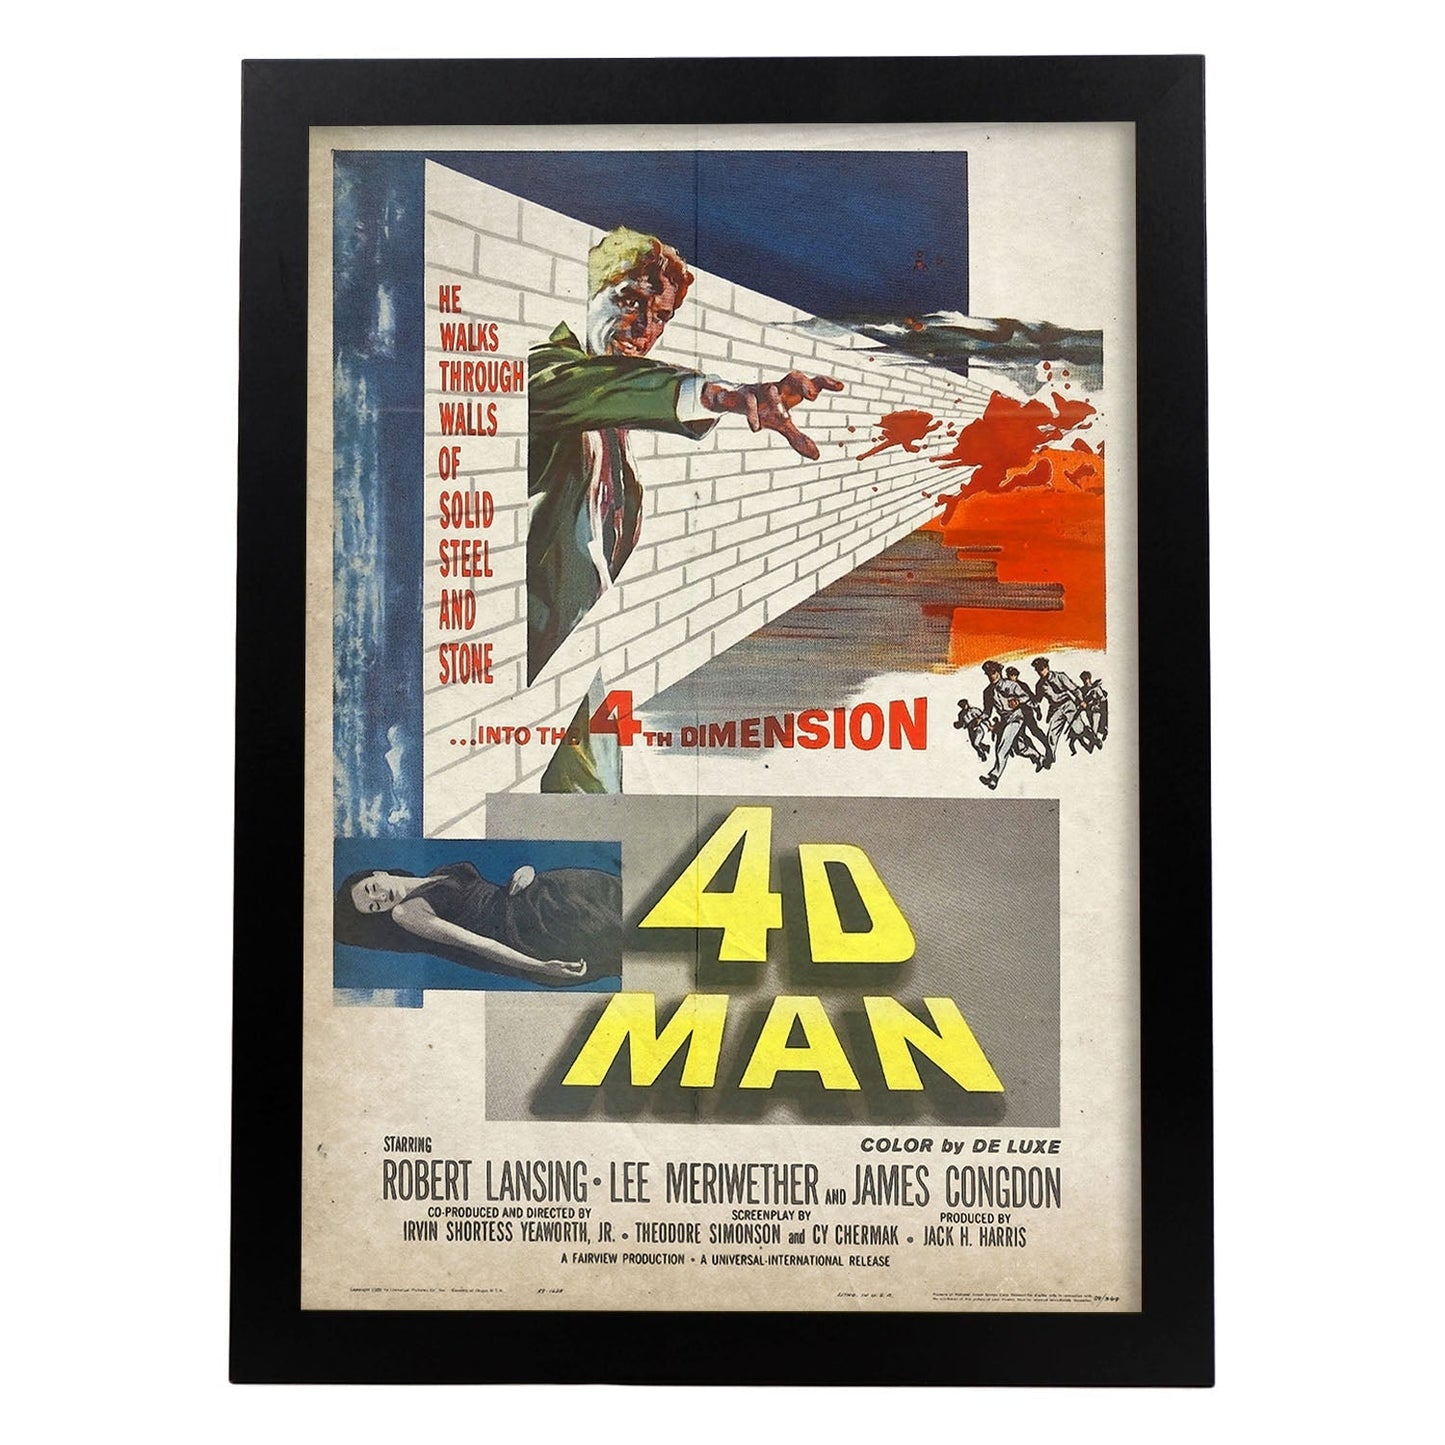 Poster vintage de 4D man. con imágenes vintage y de publicidad antigua.-Artwork-Nacnic-A3-Marco Negro-Nacnic Estudio SL